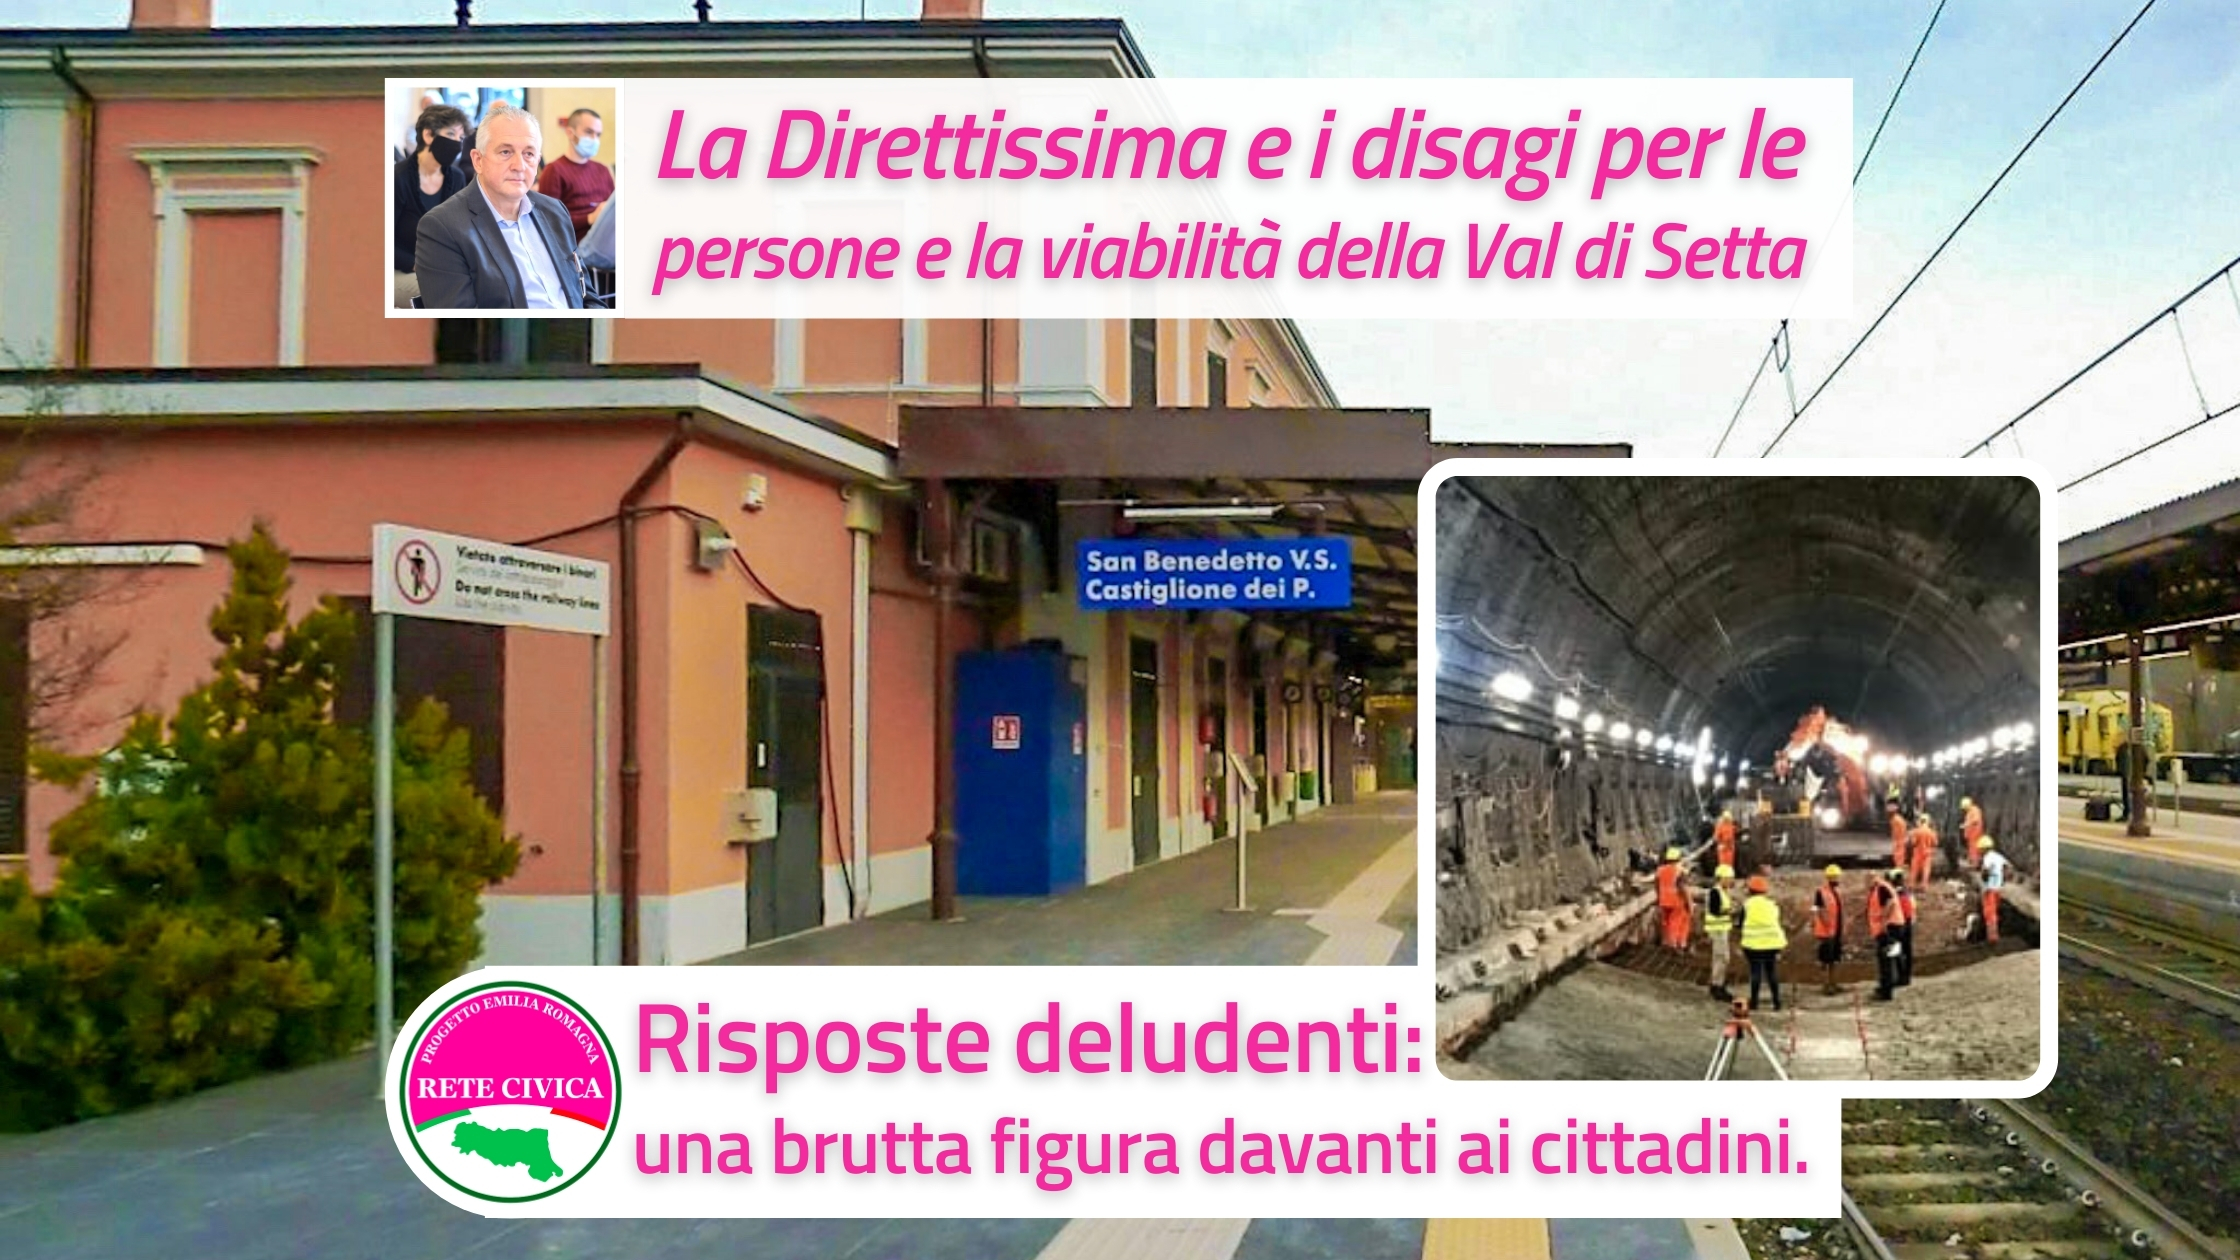 Al momento stai visualizzando La Direttissima Bologna-Prato: risposte deludenti per l’utenza